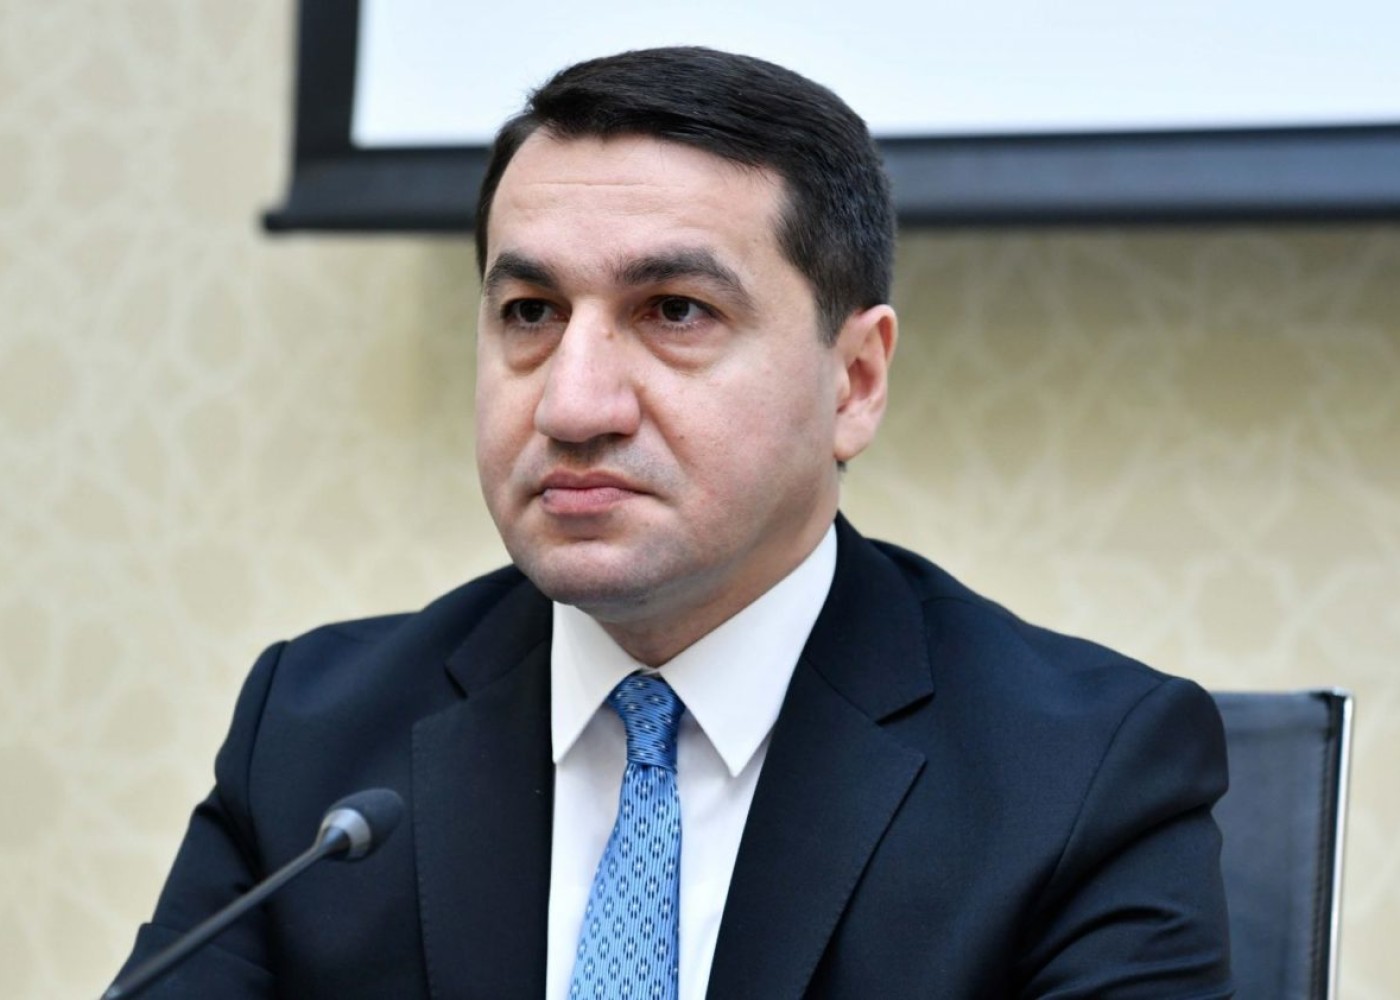 "Ermənistan geosiyasi oyunlardan çəkinməlidir"- Prezidentin köməkçisi